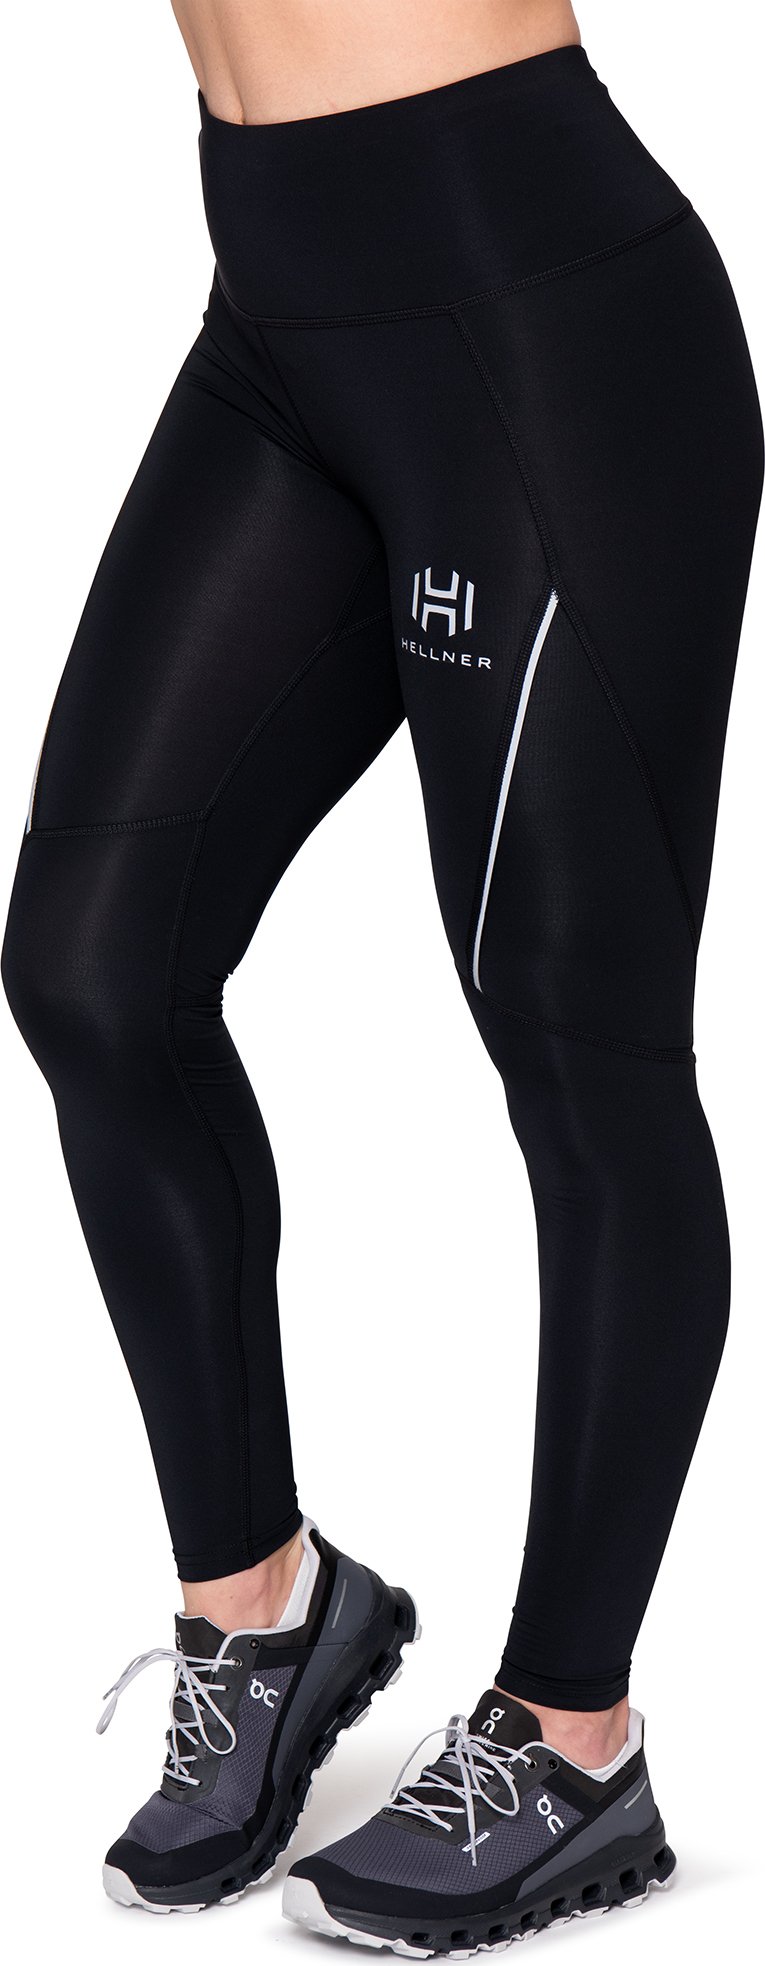 https://www.fjellsport.no/assets/blobs/hellner-akkavarri-compression-tights-women-s-black-beauty-e0f5ab6c0b.jpeg?w=800